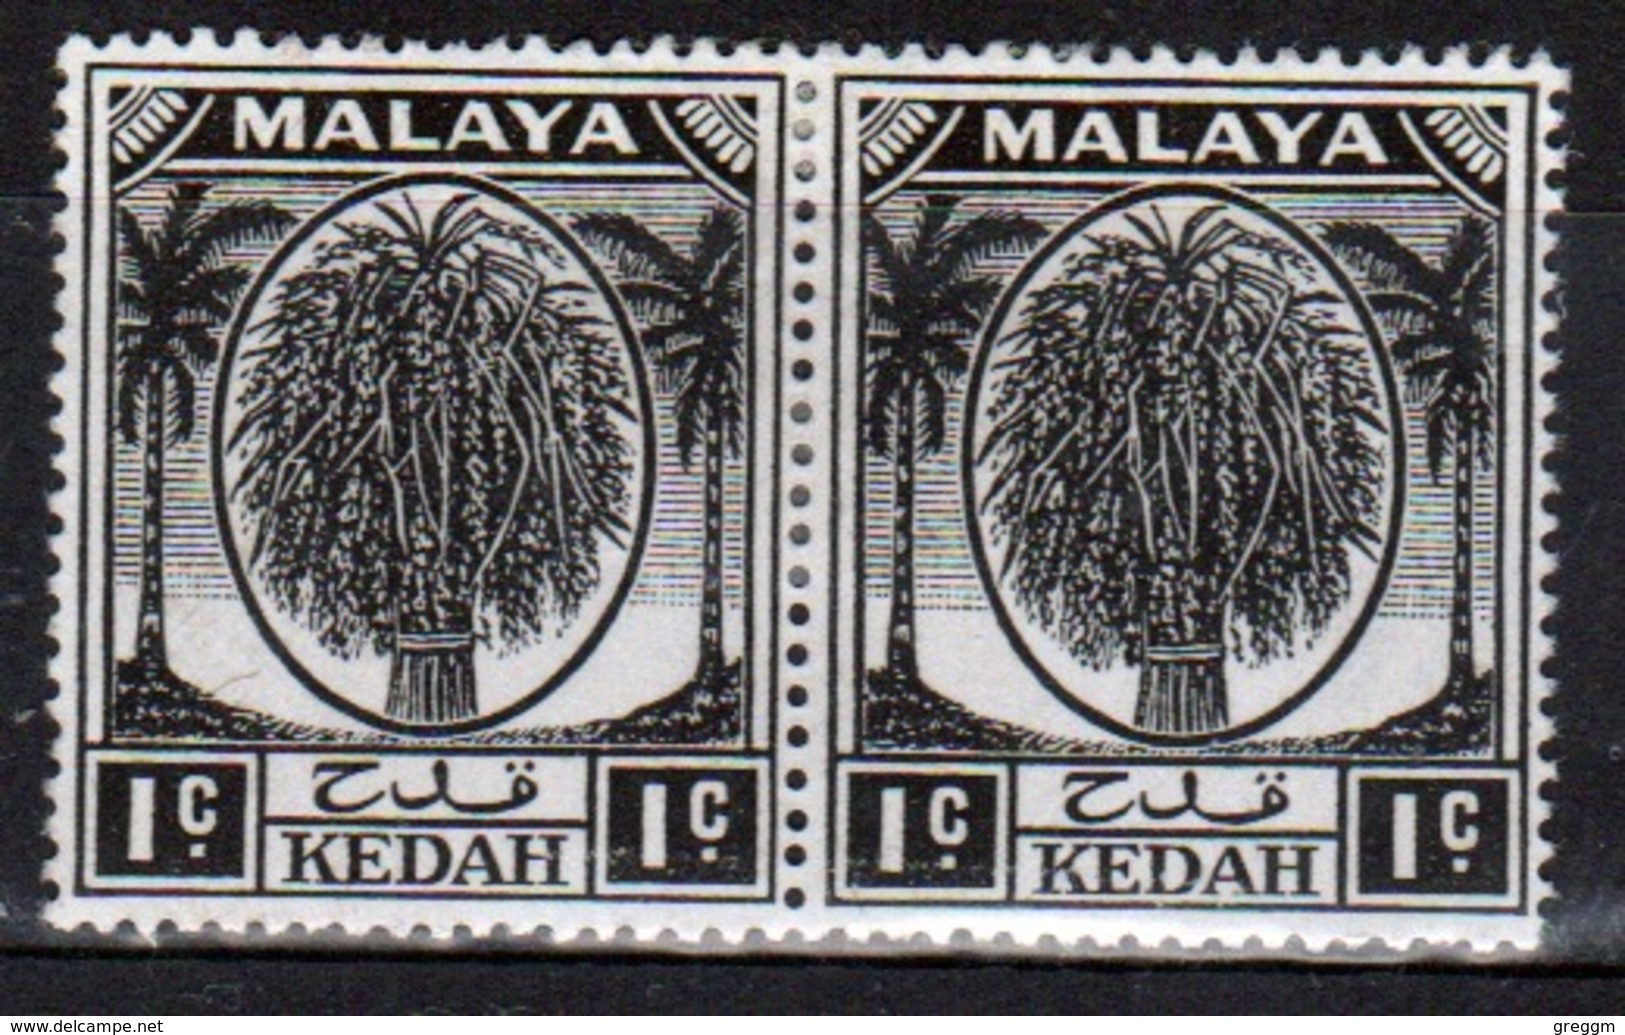 Malaysia Kedah 1950 One Cent Black Pair Of Stamps. - Kedah